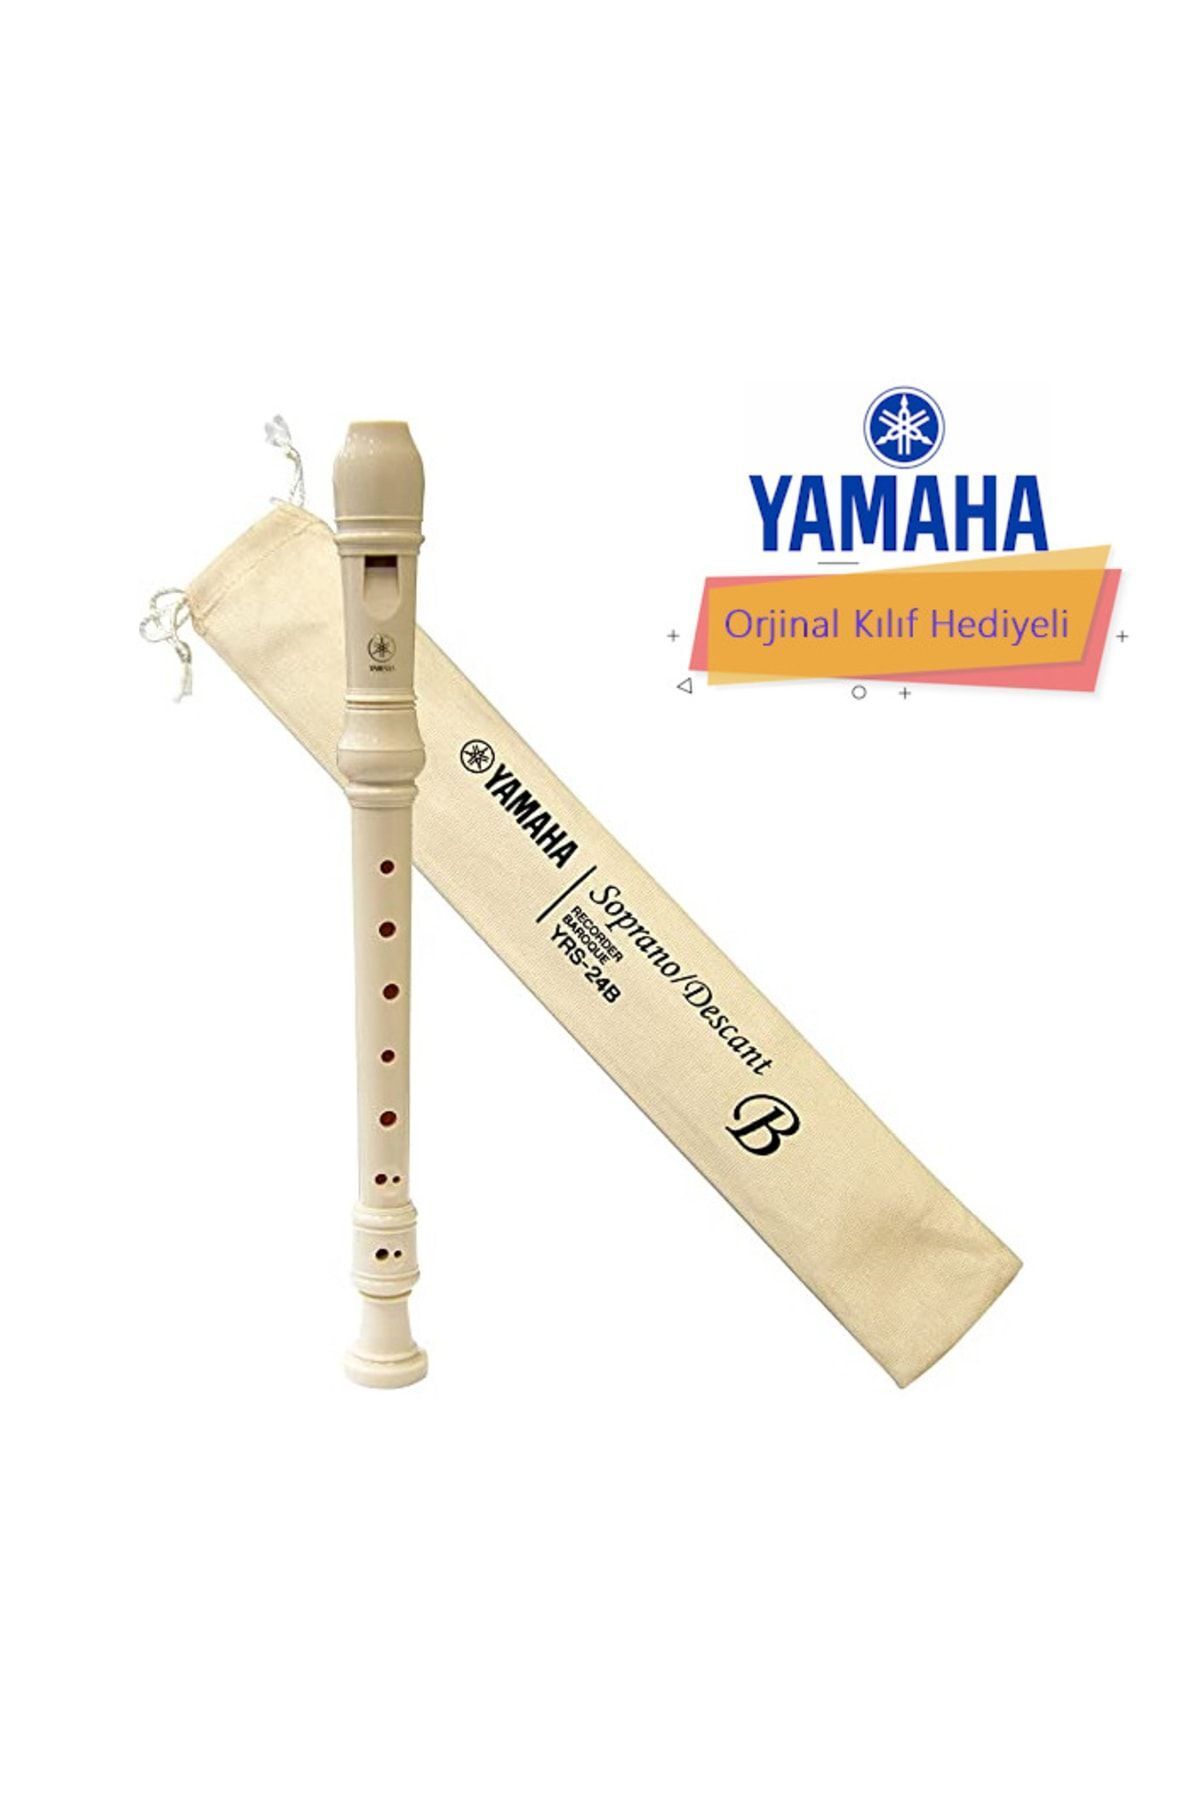 Yamaha Yrs23 Soprano Blok Flüt ( Kılıf Hediyeli)